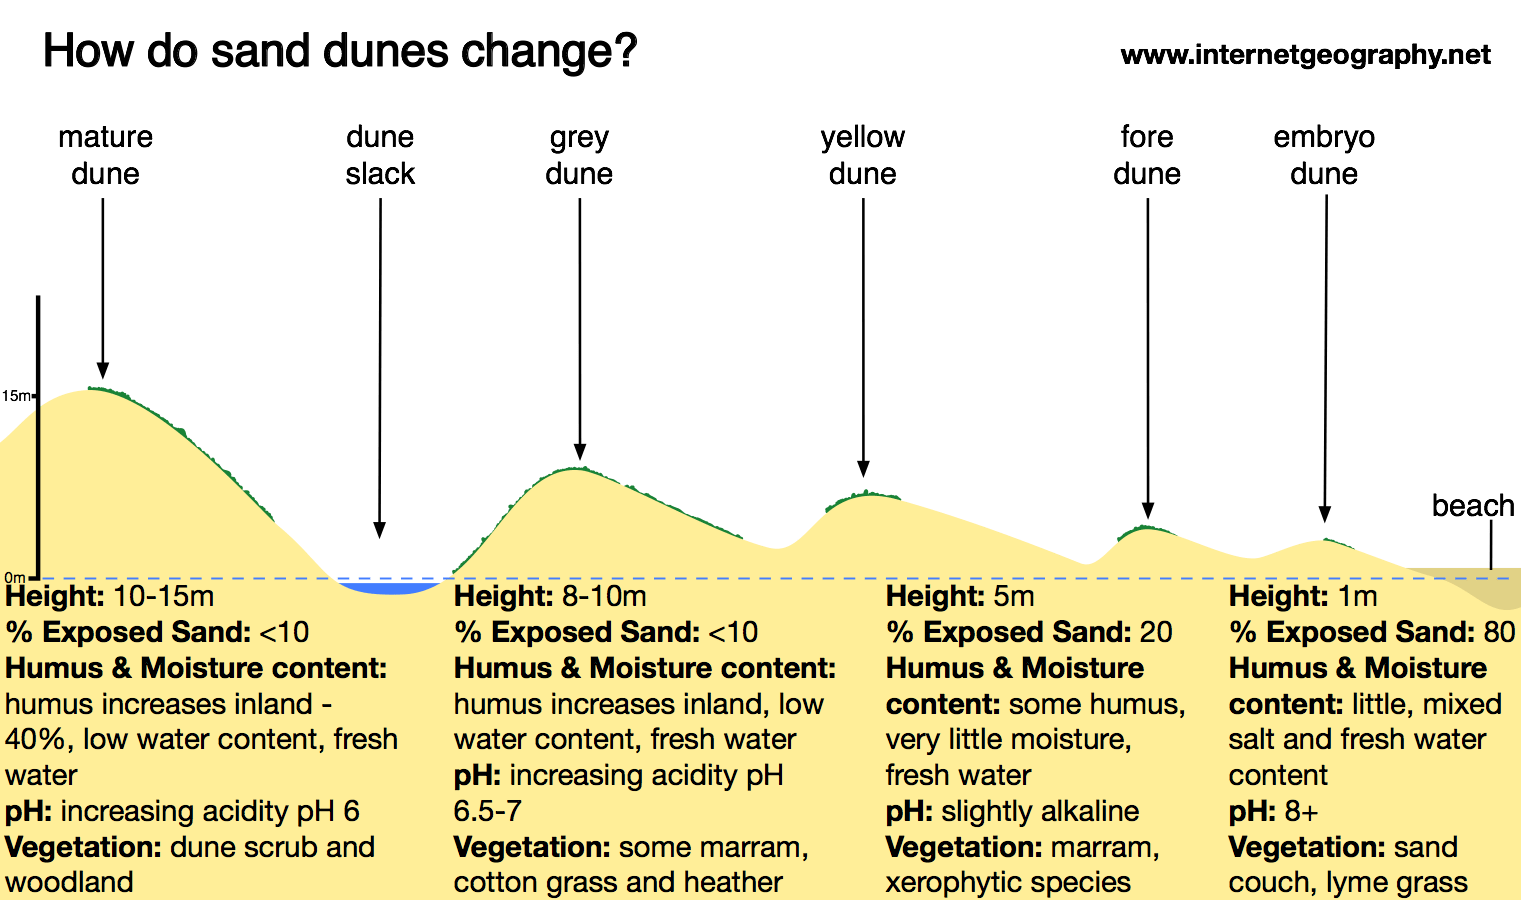 dune diagram